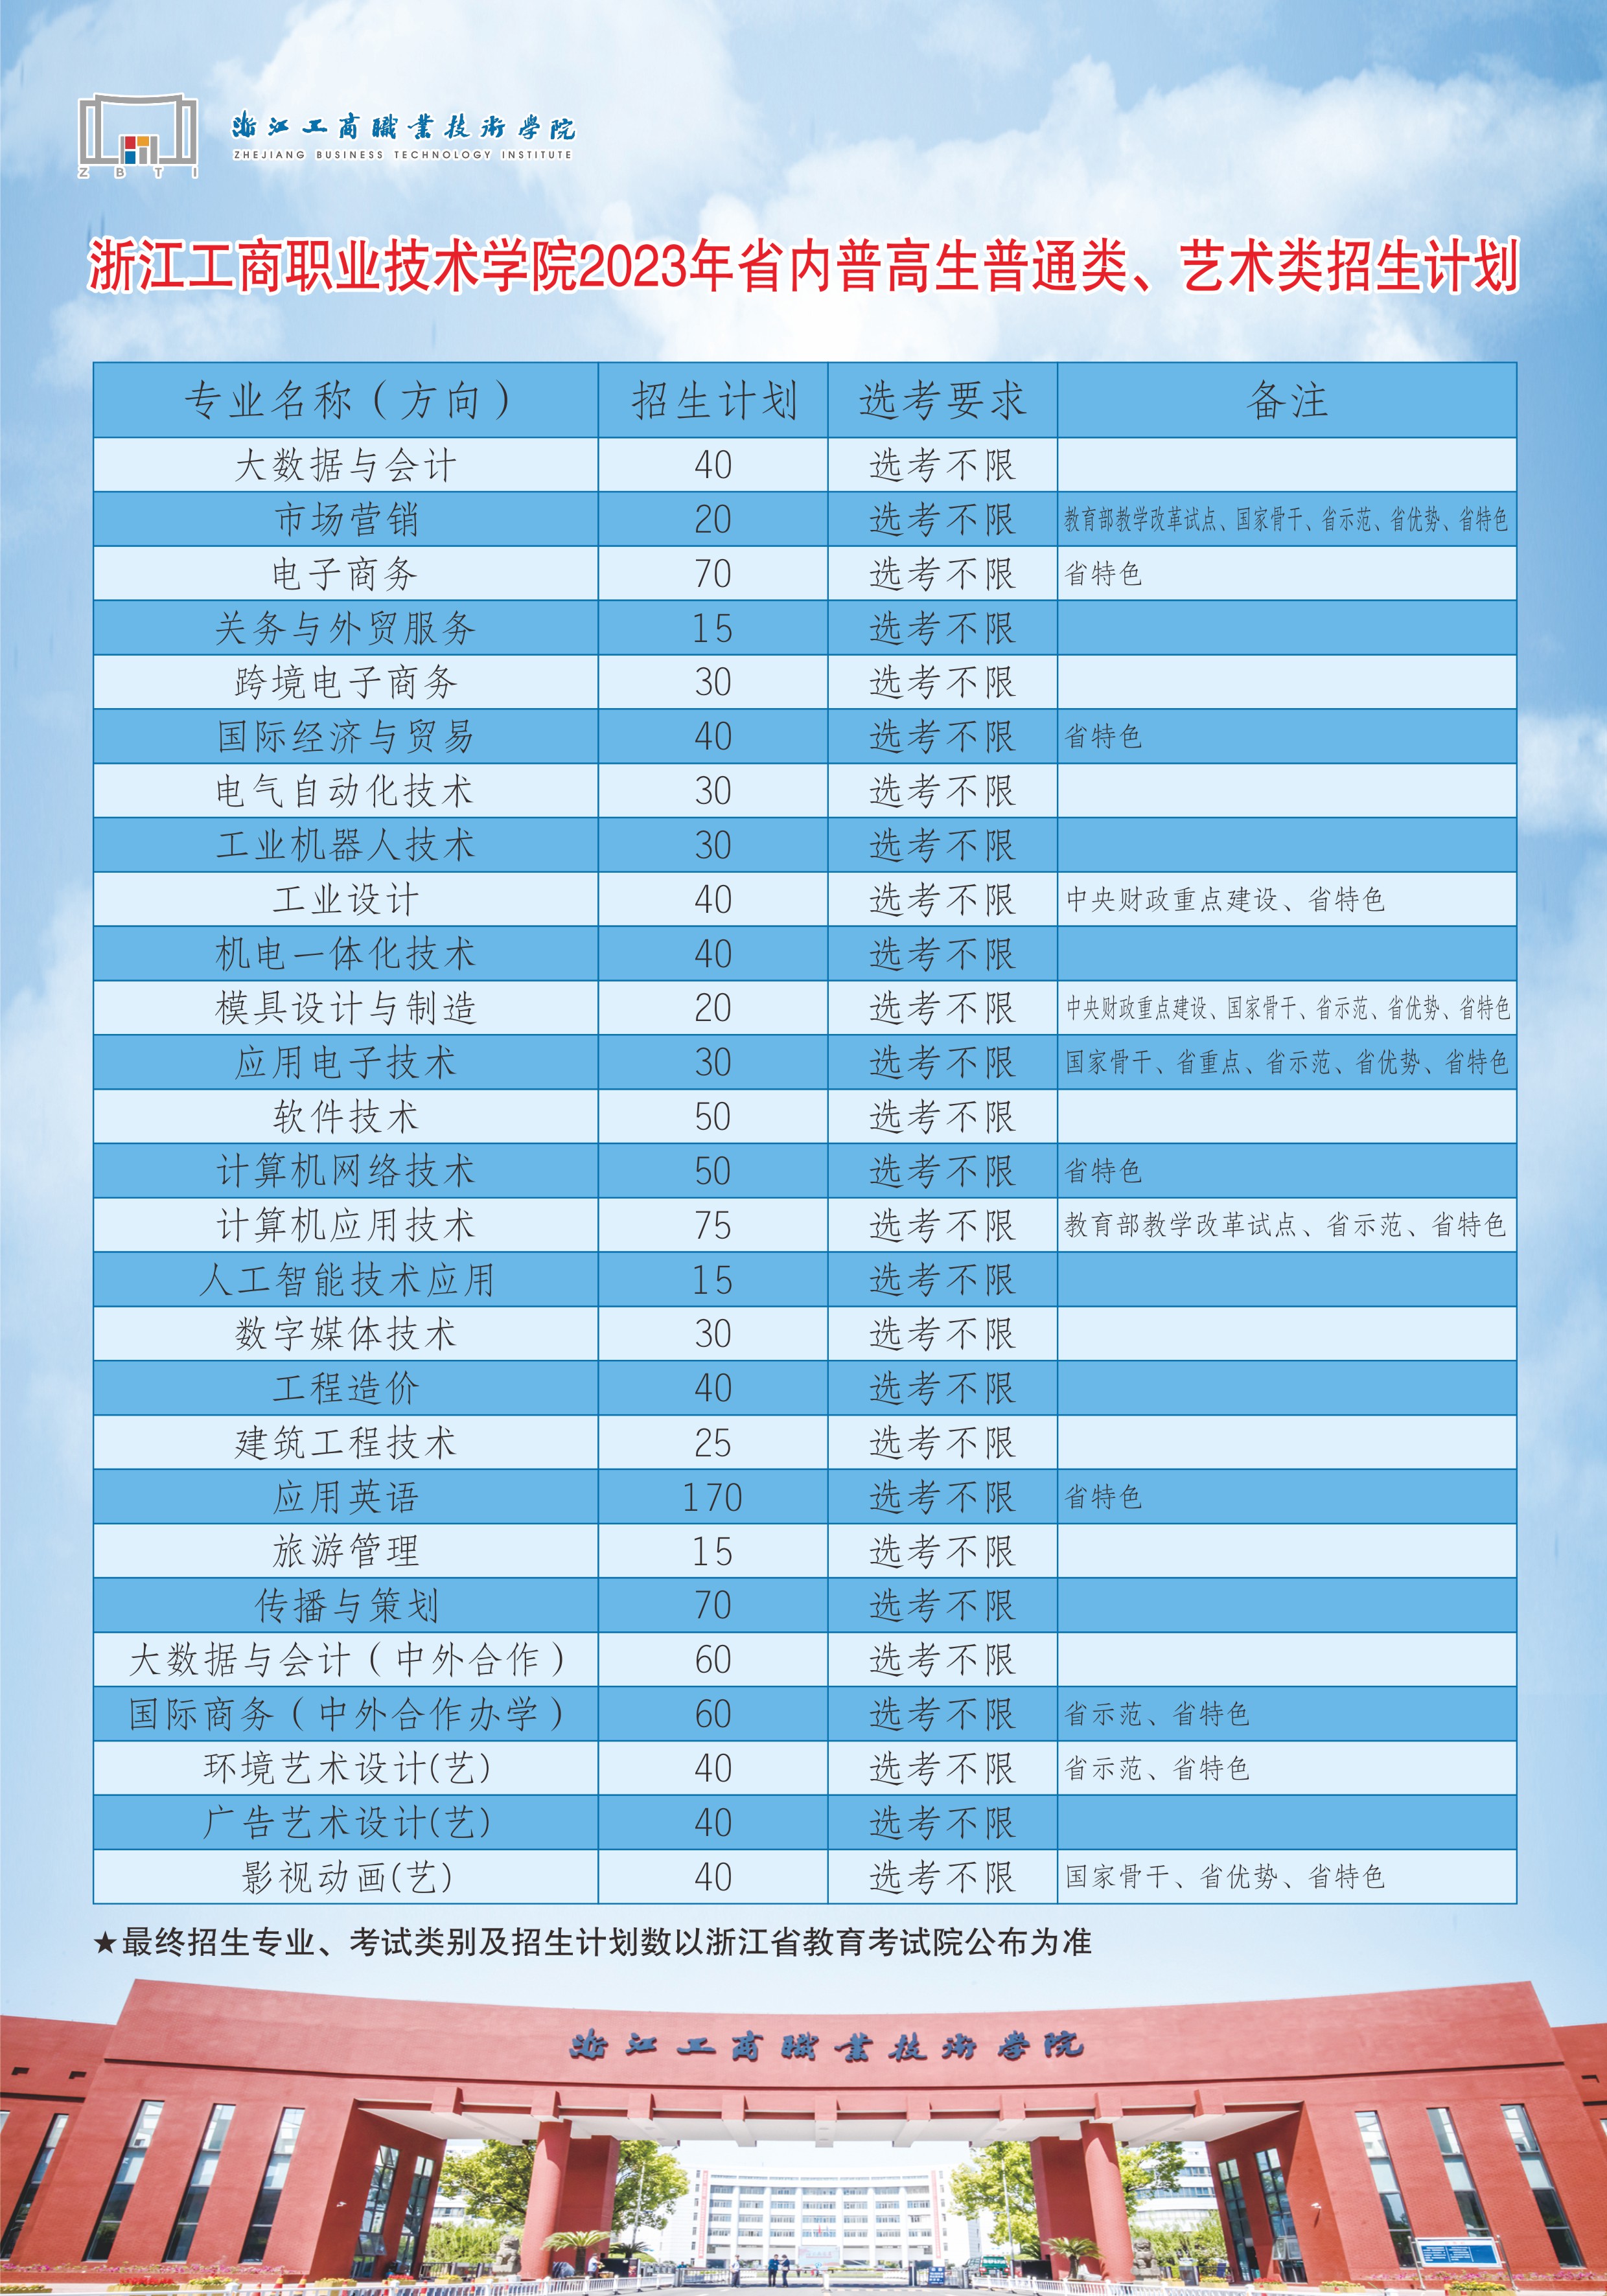 浙江工商职业技术学院2023年省内普高生普通类、艺术类招生计划